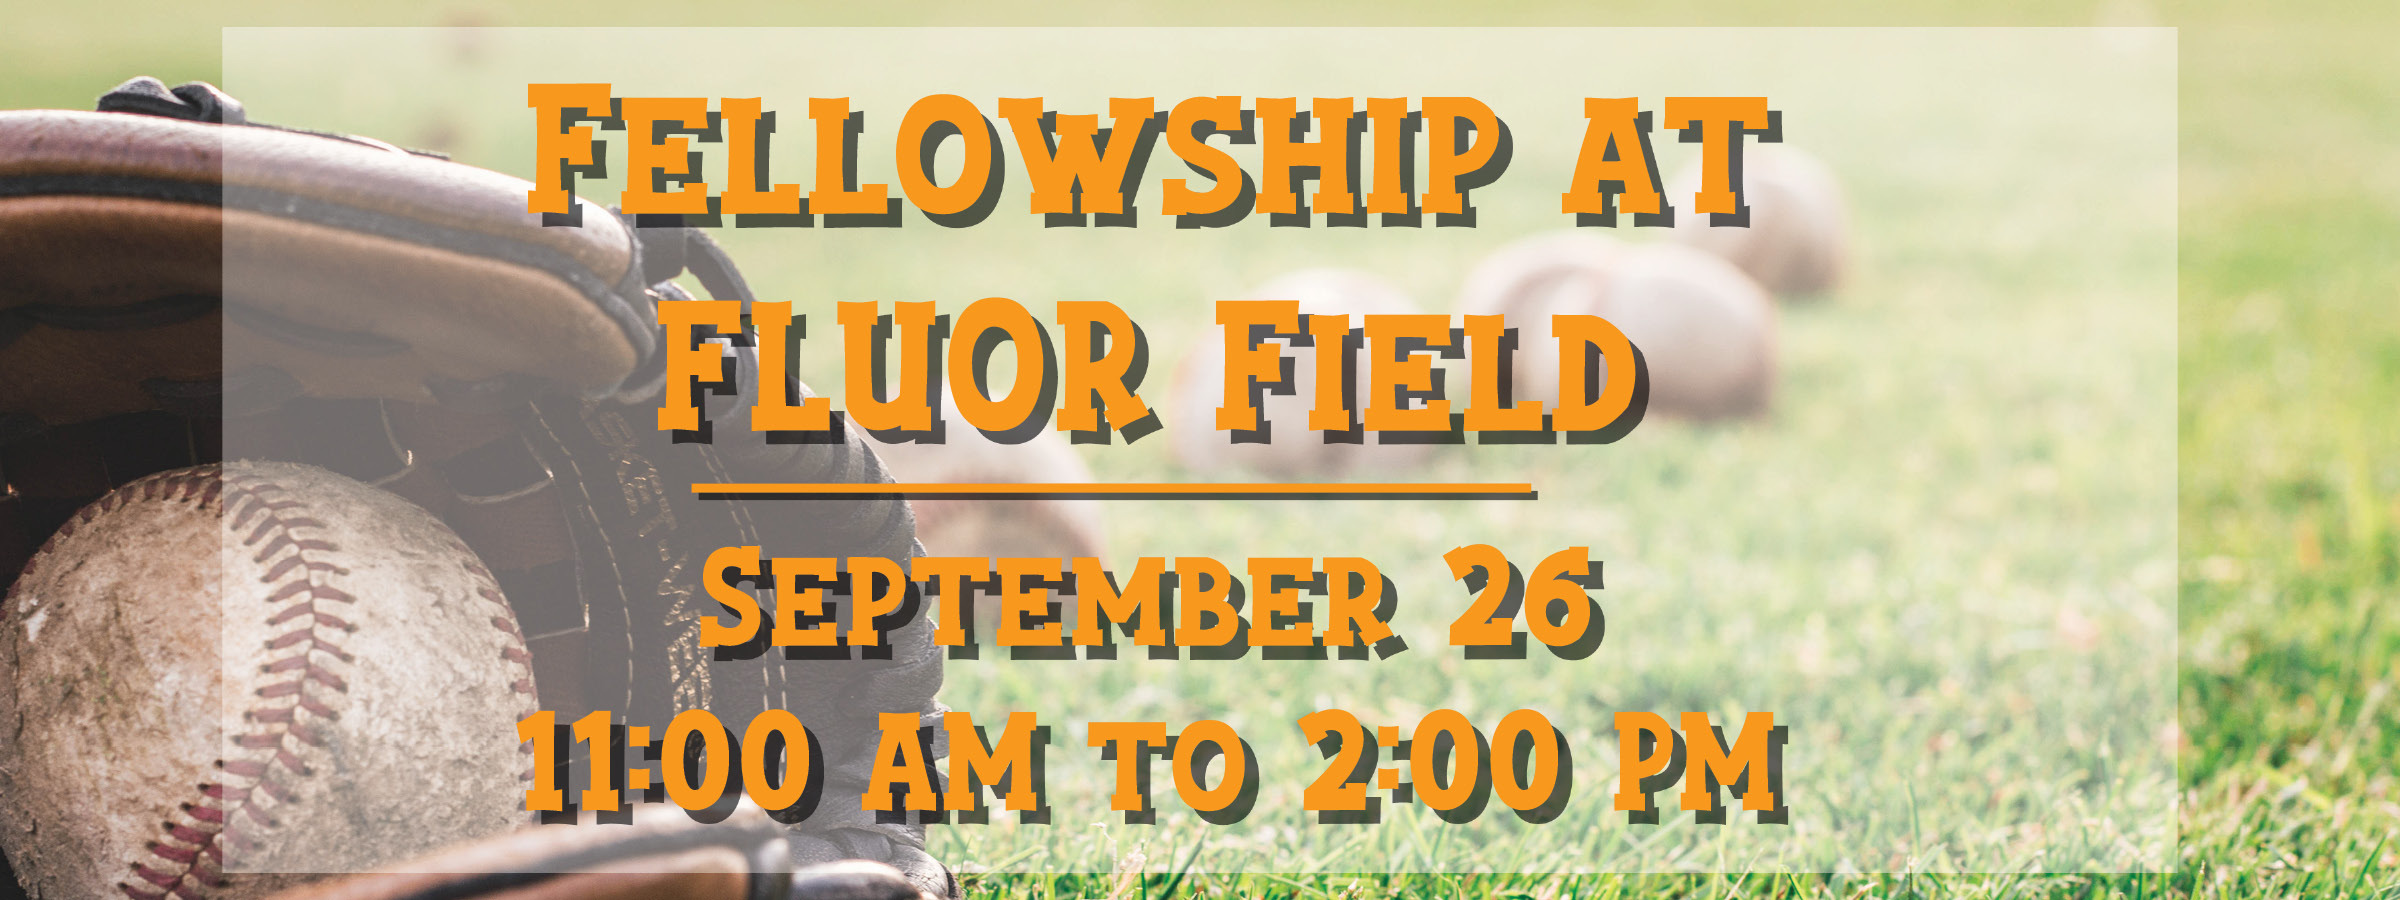 Fellowship at Fluor Field